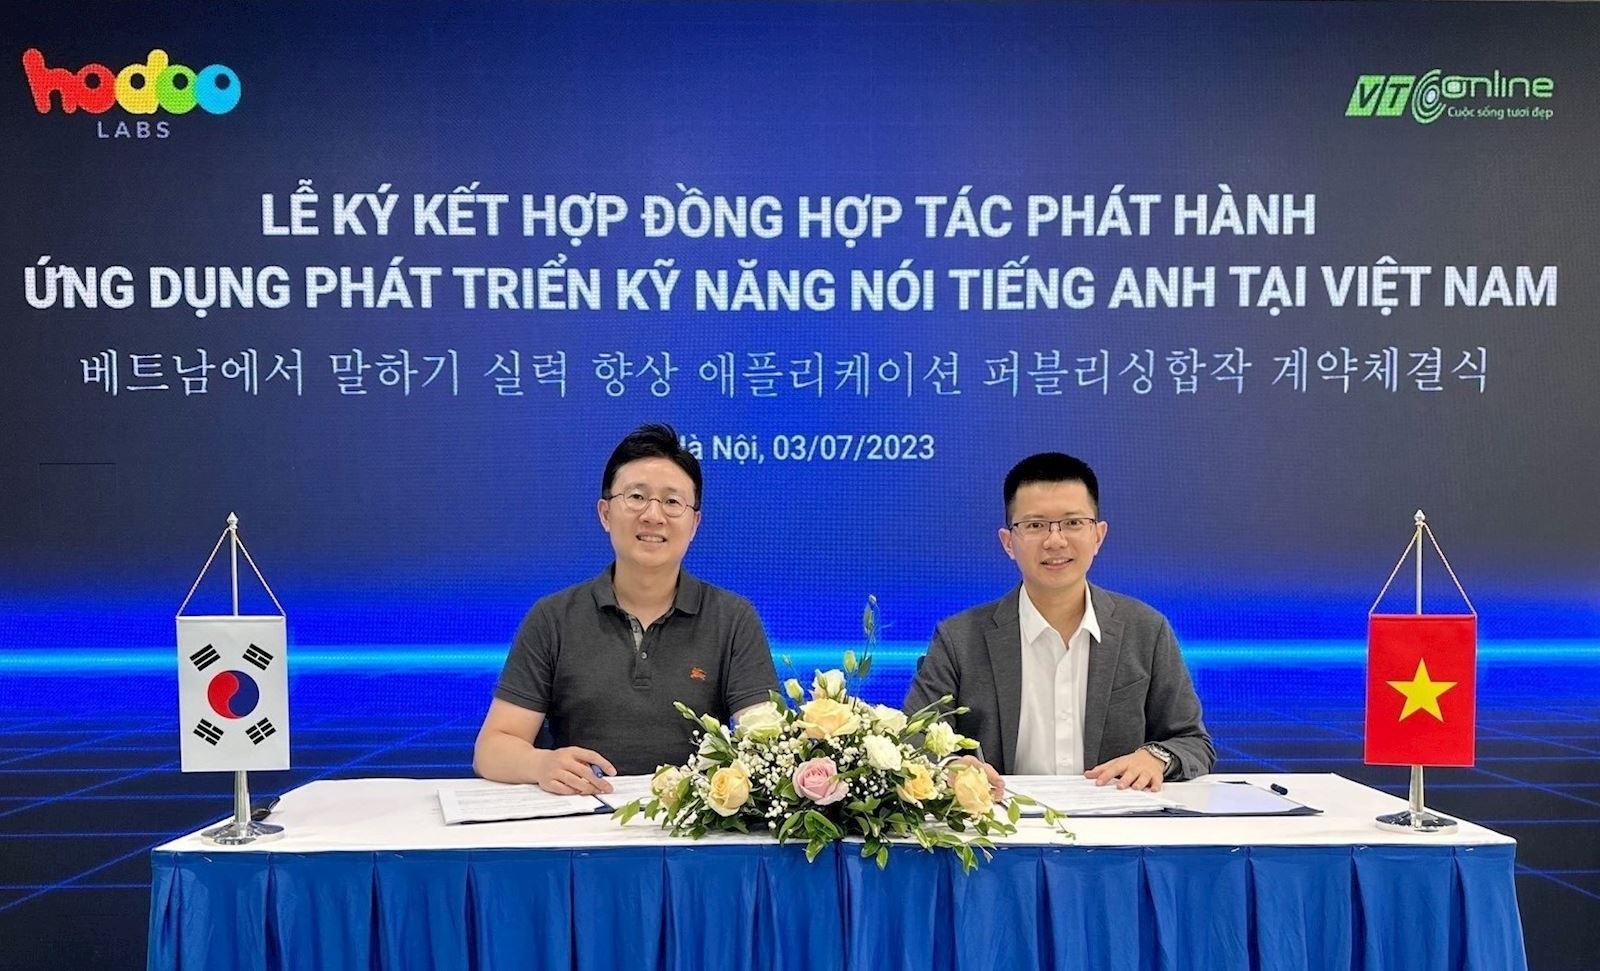 VTC Online hợp tác phát hành ứng dụng Betia - phát triển kỹ năng nói tiếng Anh tại Việt Nam